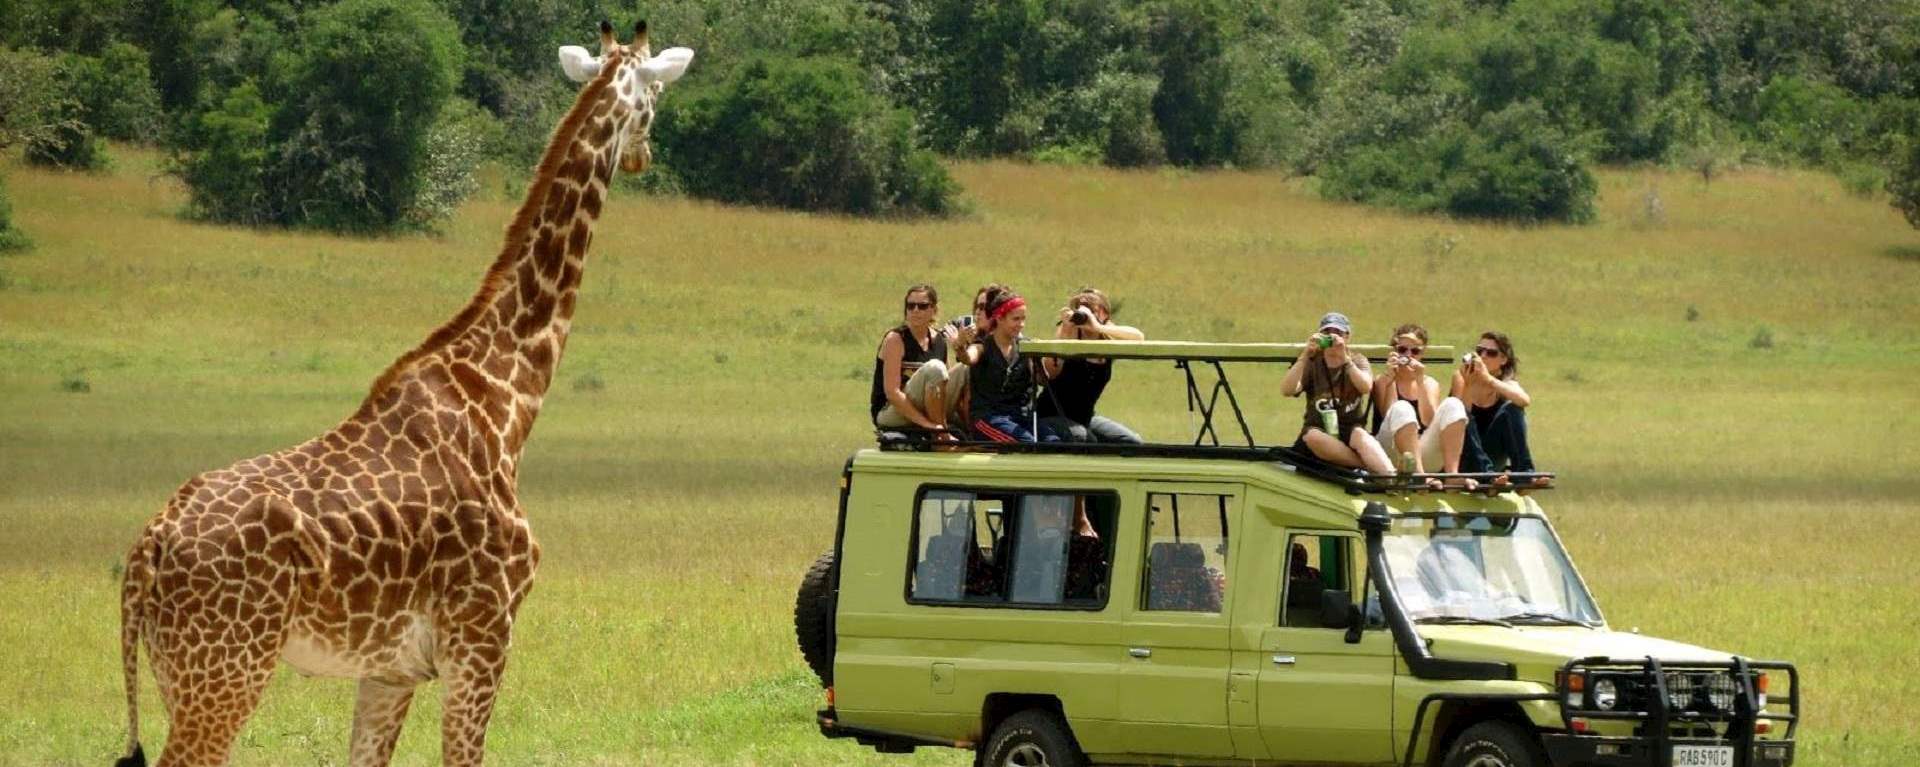 Tips For Doing A Tanzania Safari In Africa